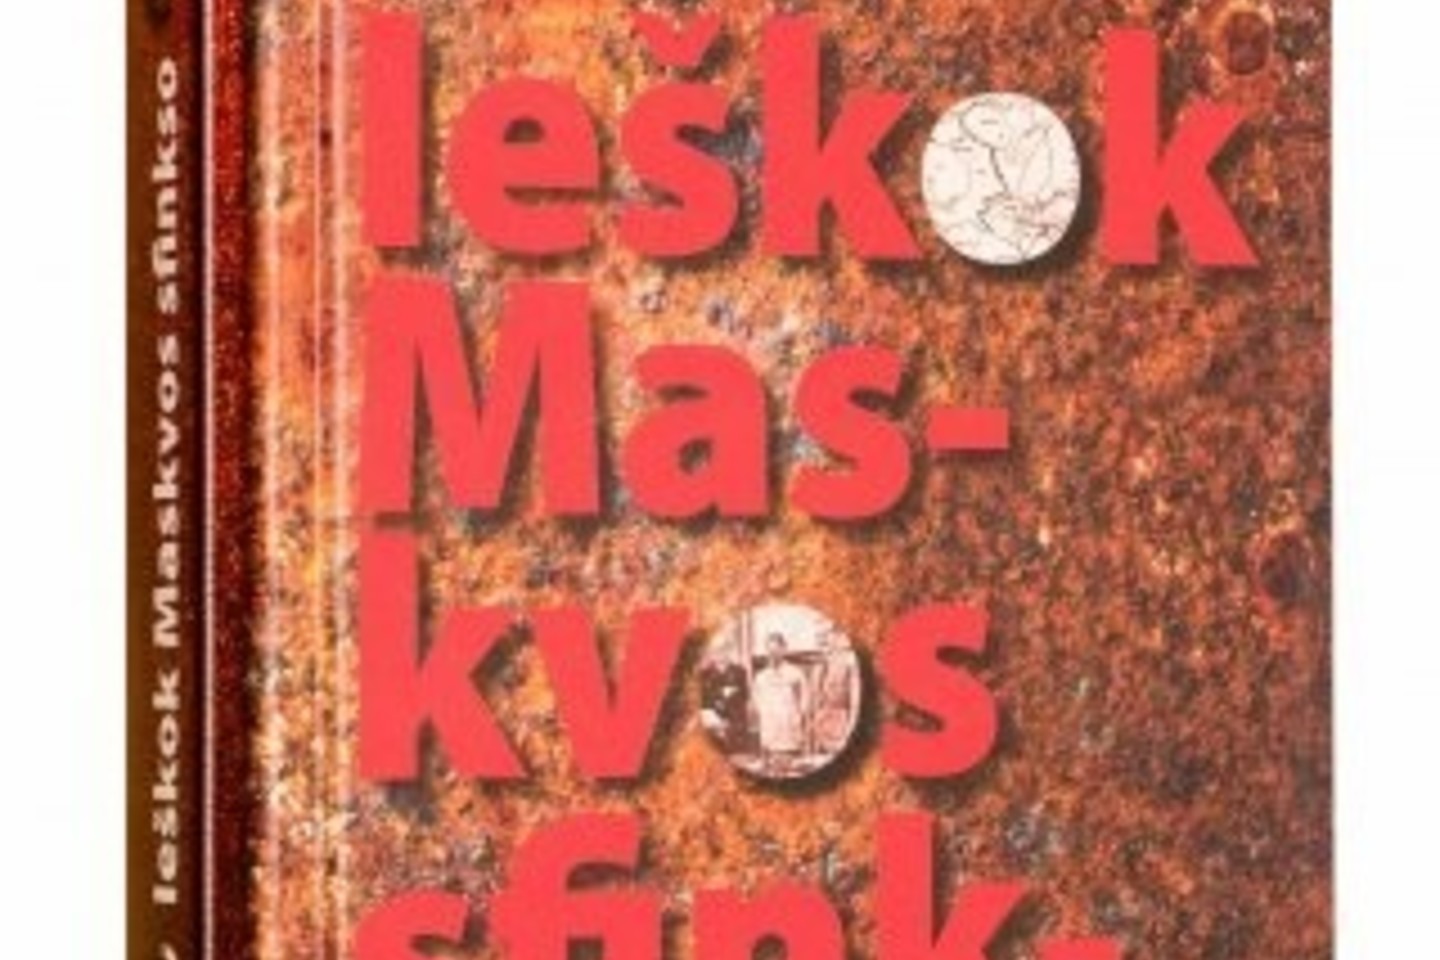 A.Eidinto istorinis romanas „Ieškok Maskvos sfinkso“ apie SSRS įvykdytą Lietuvos okupaciją 1940 metais ir jos aplinkybes leidžiamas jau trečią kartą.